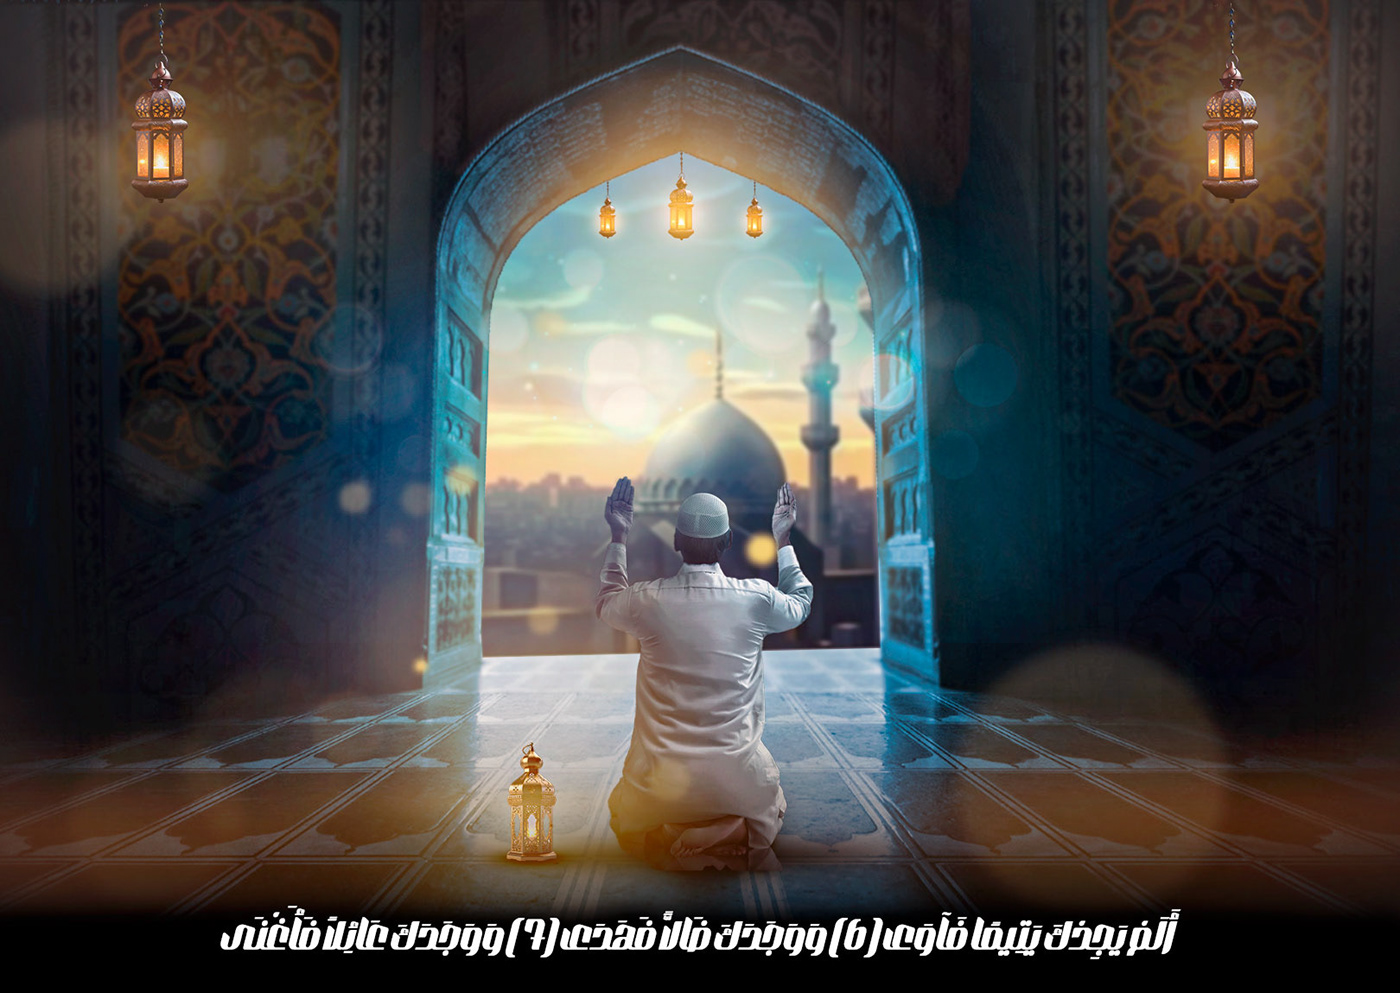 photoshop manipulation Editing  Advertising  Quran design Graphic Designer